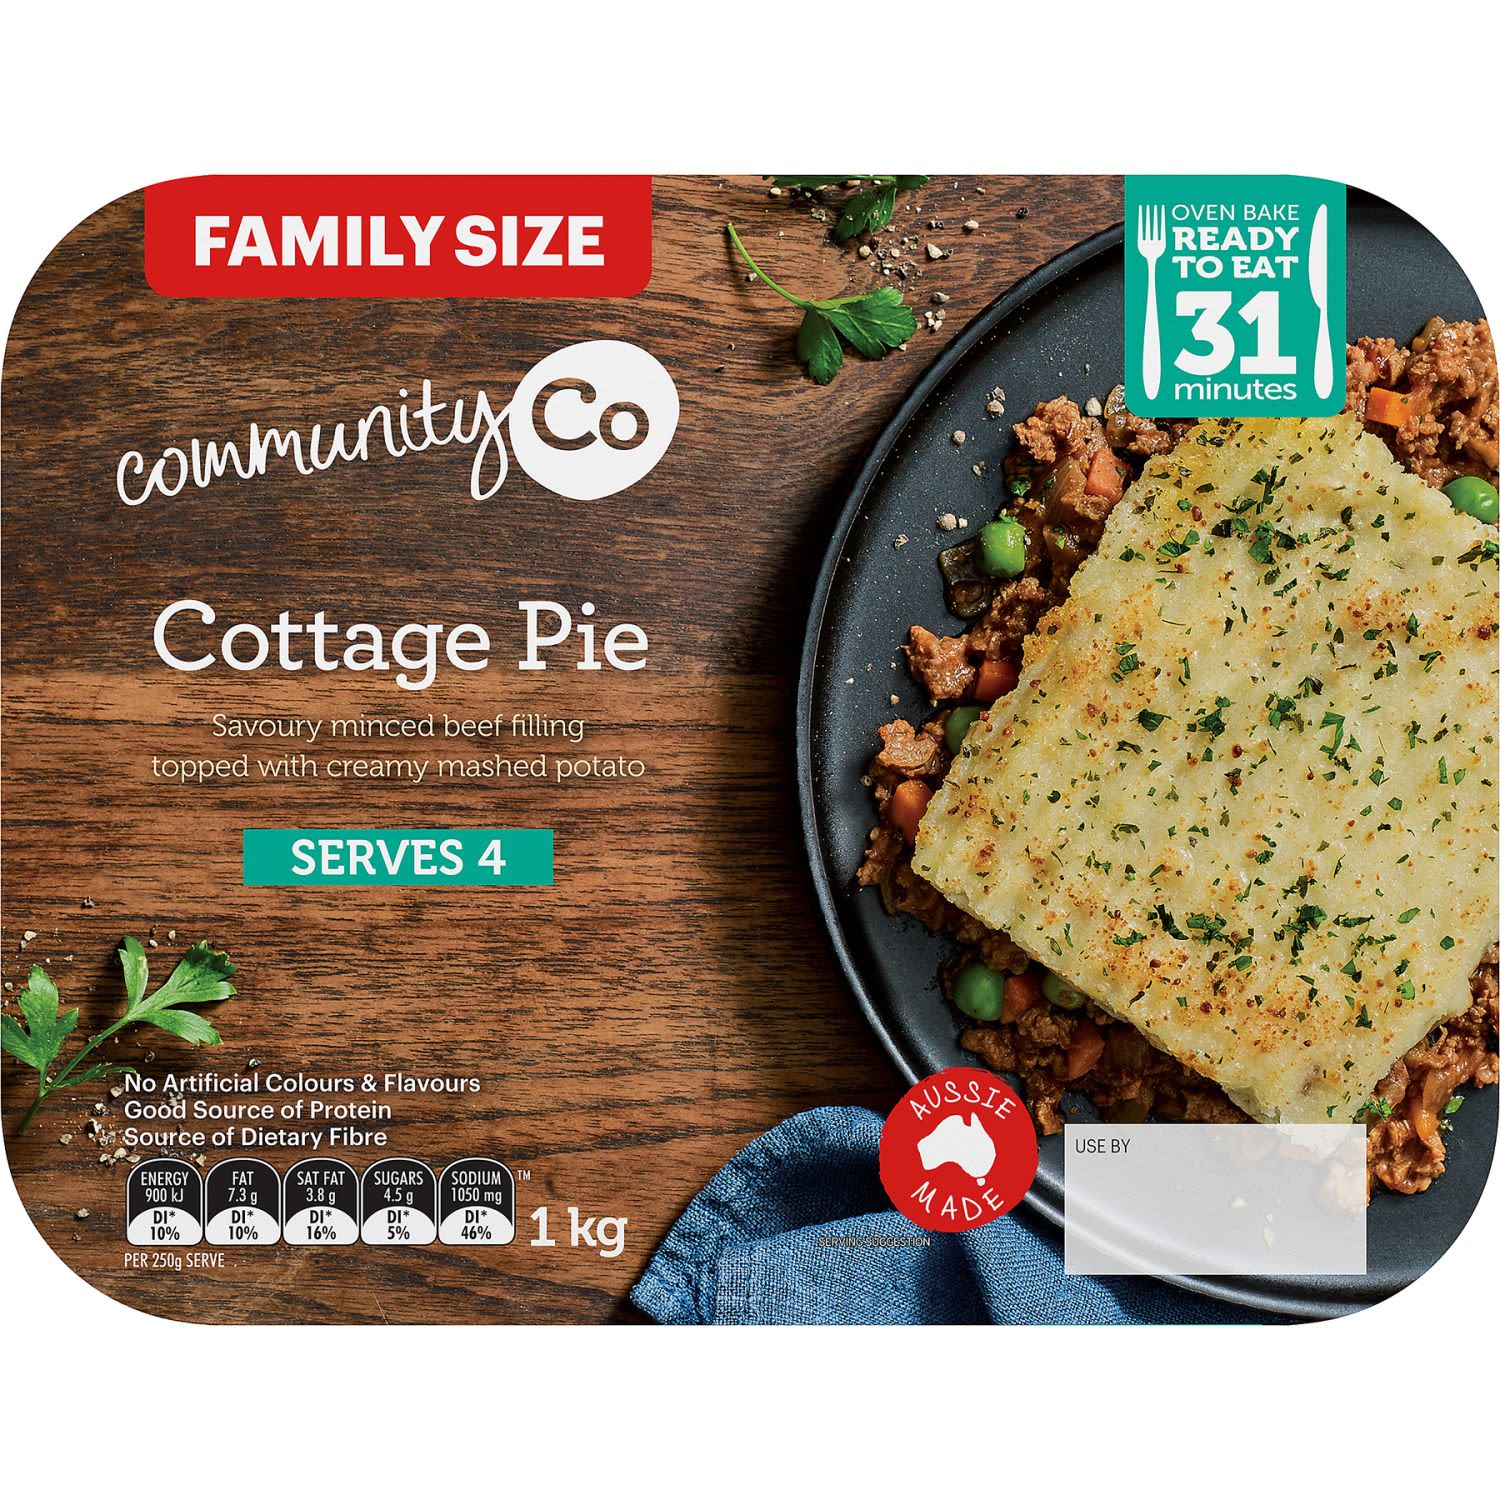 Community Co Cottage Pie, 1 Kilogram